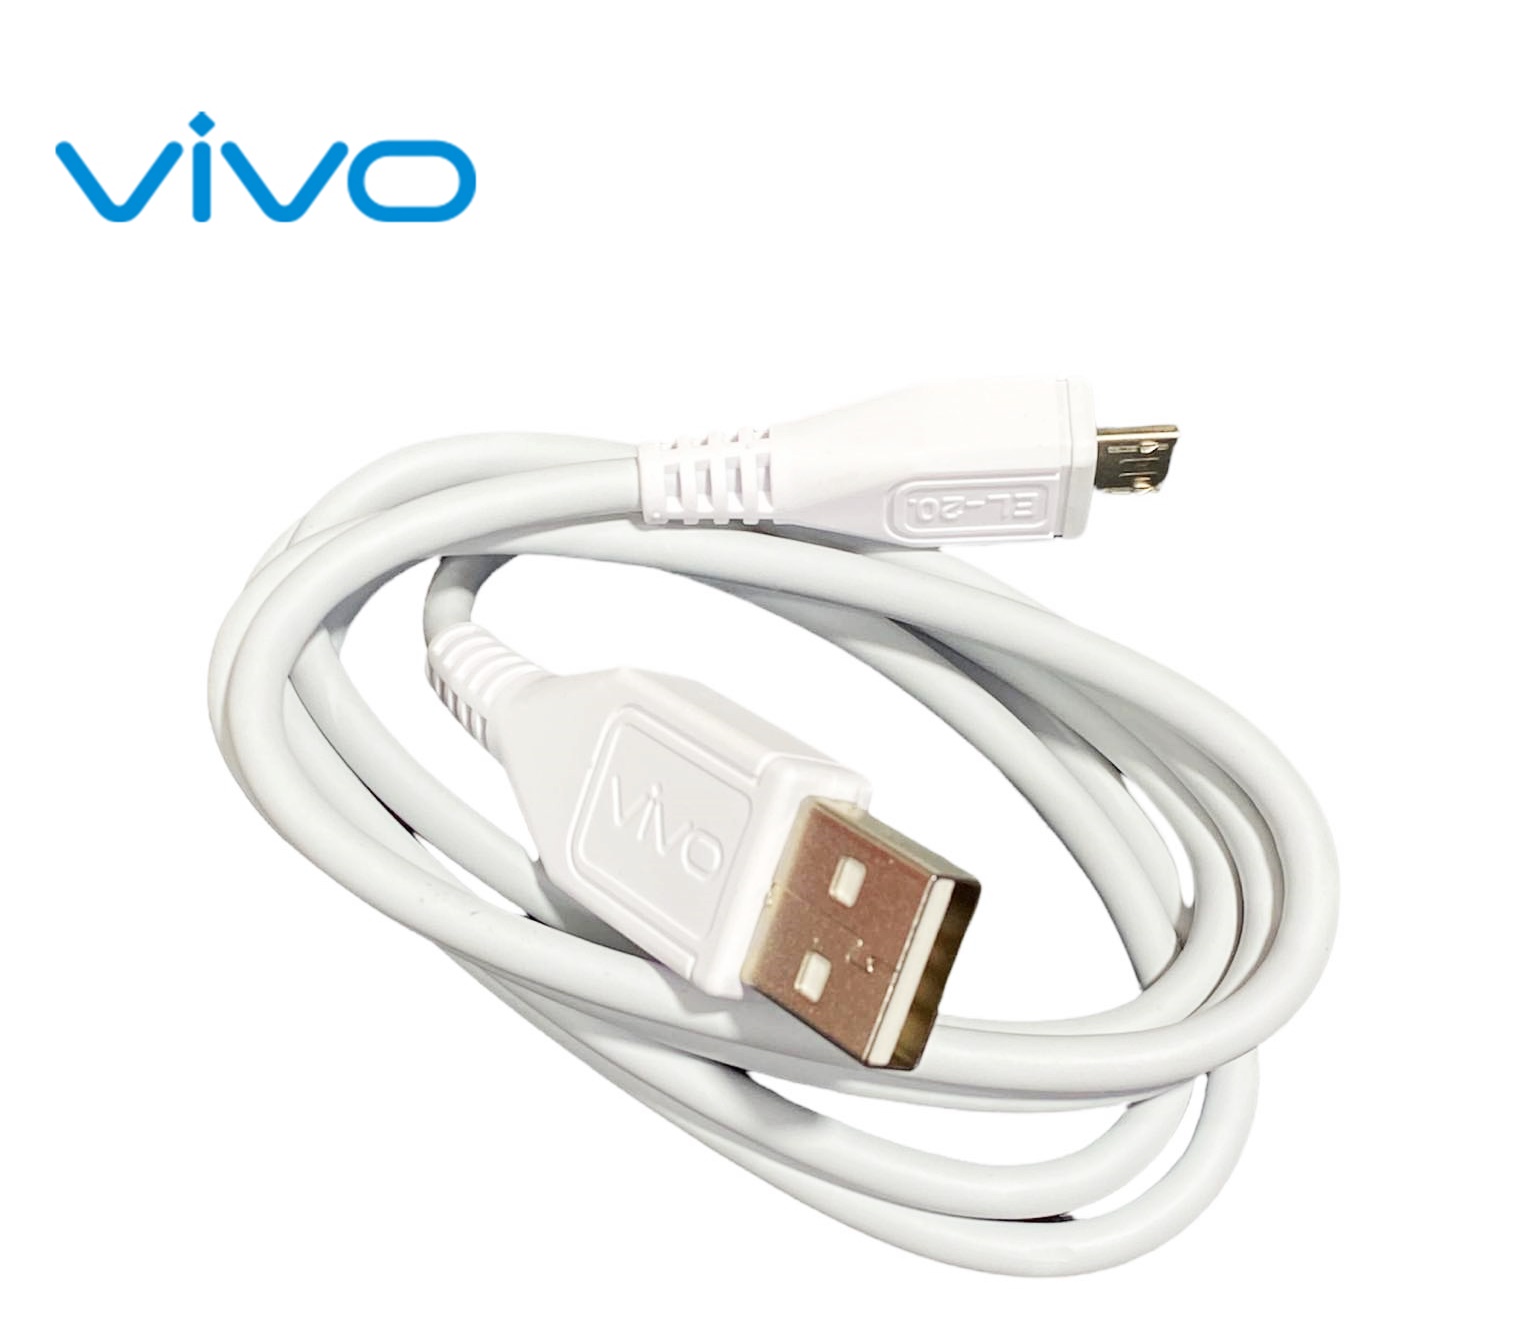 สายชาร์จ  ViVO 2A แท้ สายหนา แบบใหม่ ตรงรุ่น รองรับเช่น VIVO Y11 Y12 Y15 Y17 V9 V7+ V7 V5Plus V5 V3 Y85 Y81 Y71 ของแท้ 100% MICRO USB